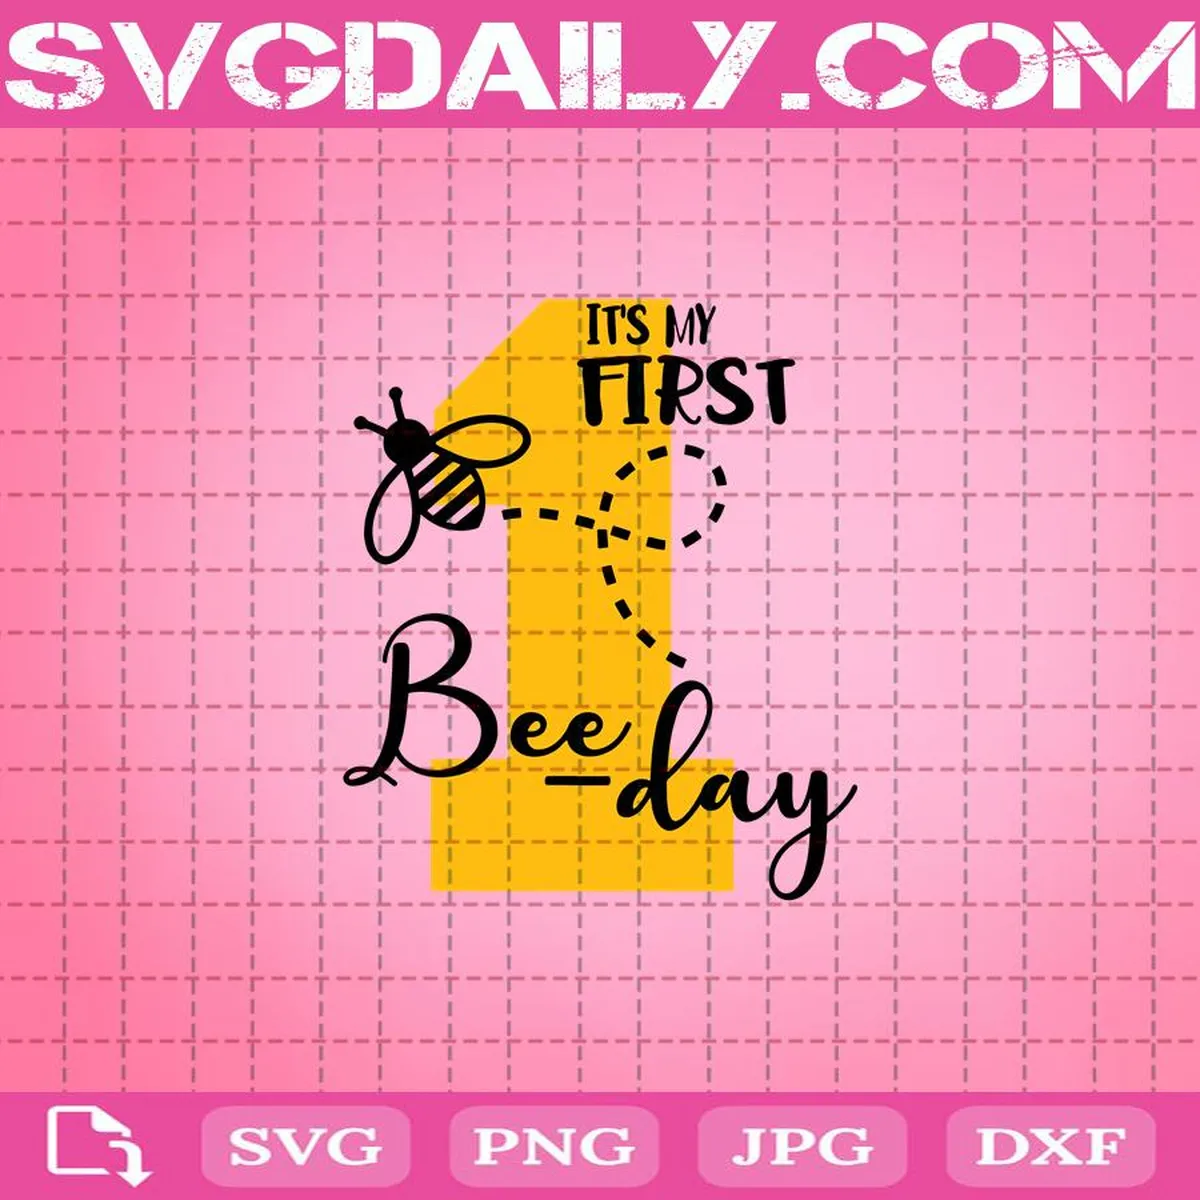 1st Bee Day Birthday Svg, My First Birthday Svg, 1st Birthday Svg, Bee Birthday Svg, Bee Svg, Birthday Svg